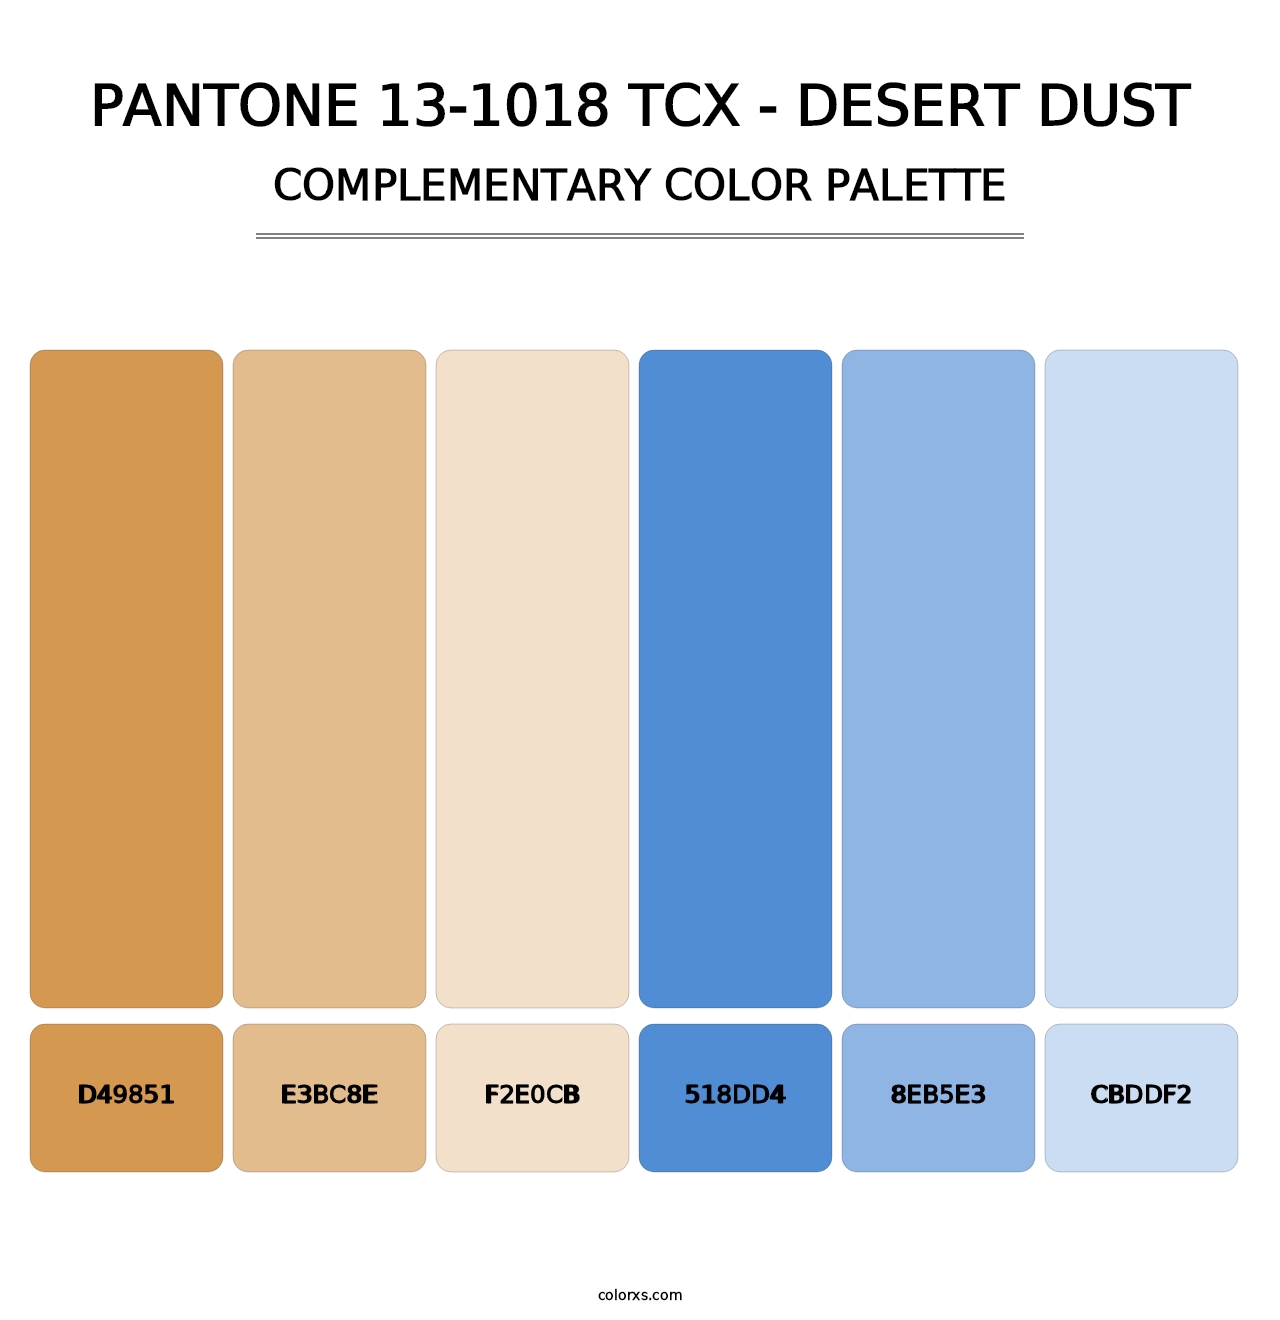 PANTONE 13-1018 TCX - Desert Dust - Complementary Color Palette